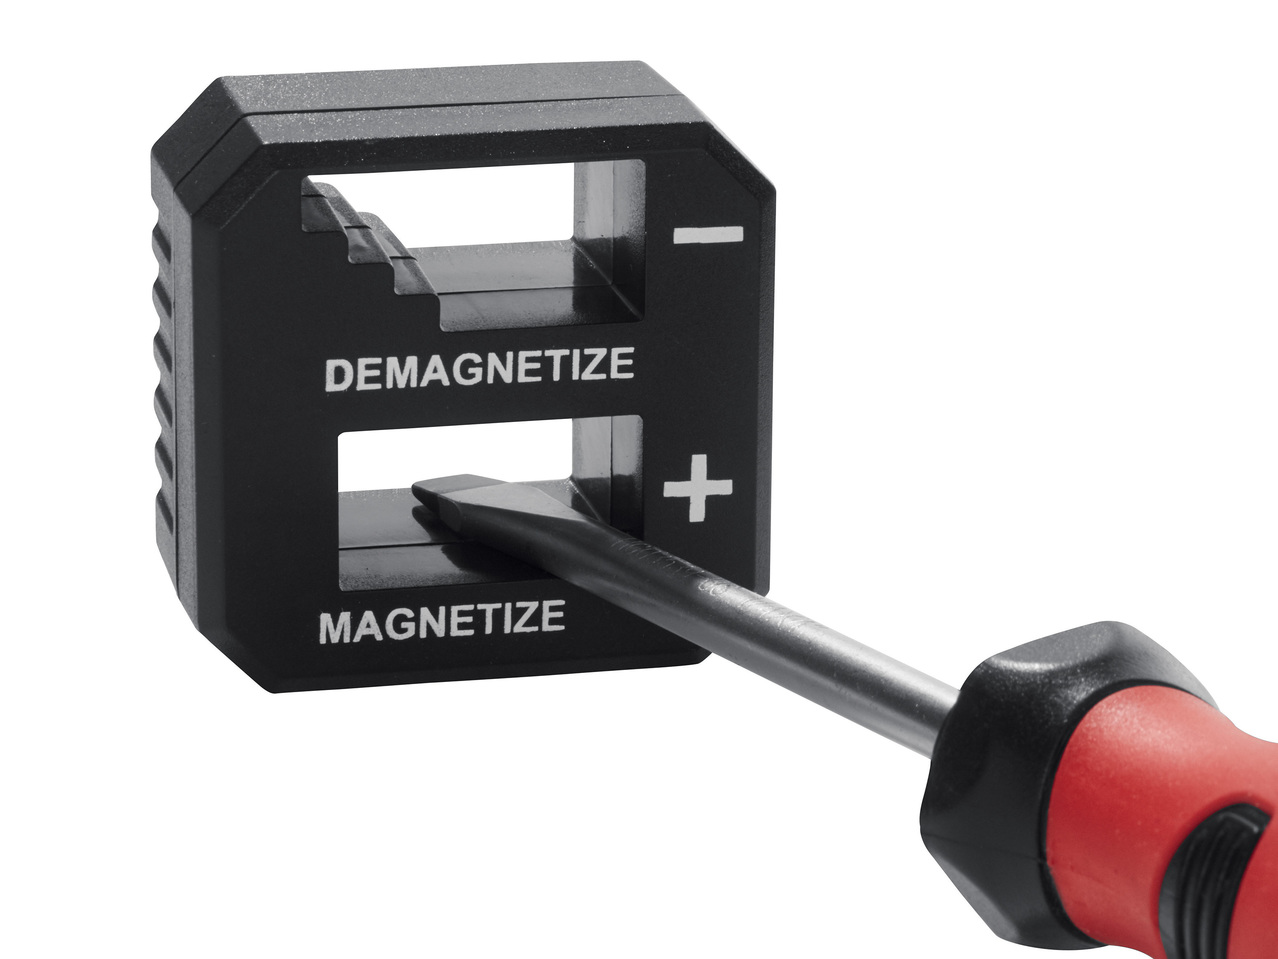 Outil magnétique ou démagnétiseur